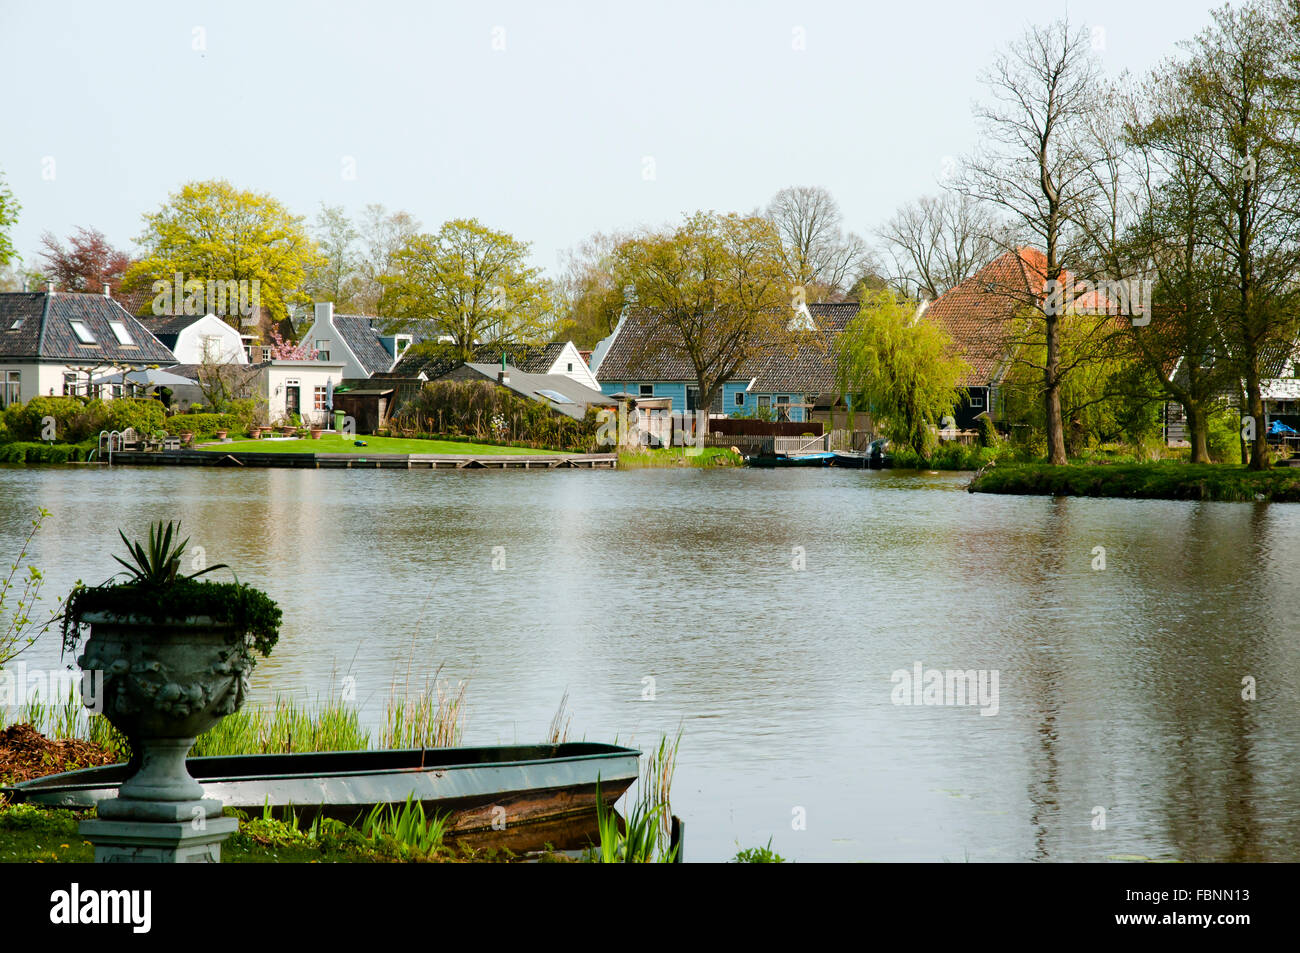 Broek in Waterland - Netherlands Stock Photo